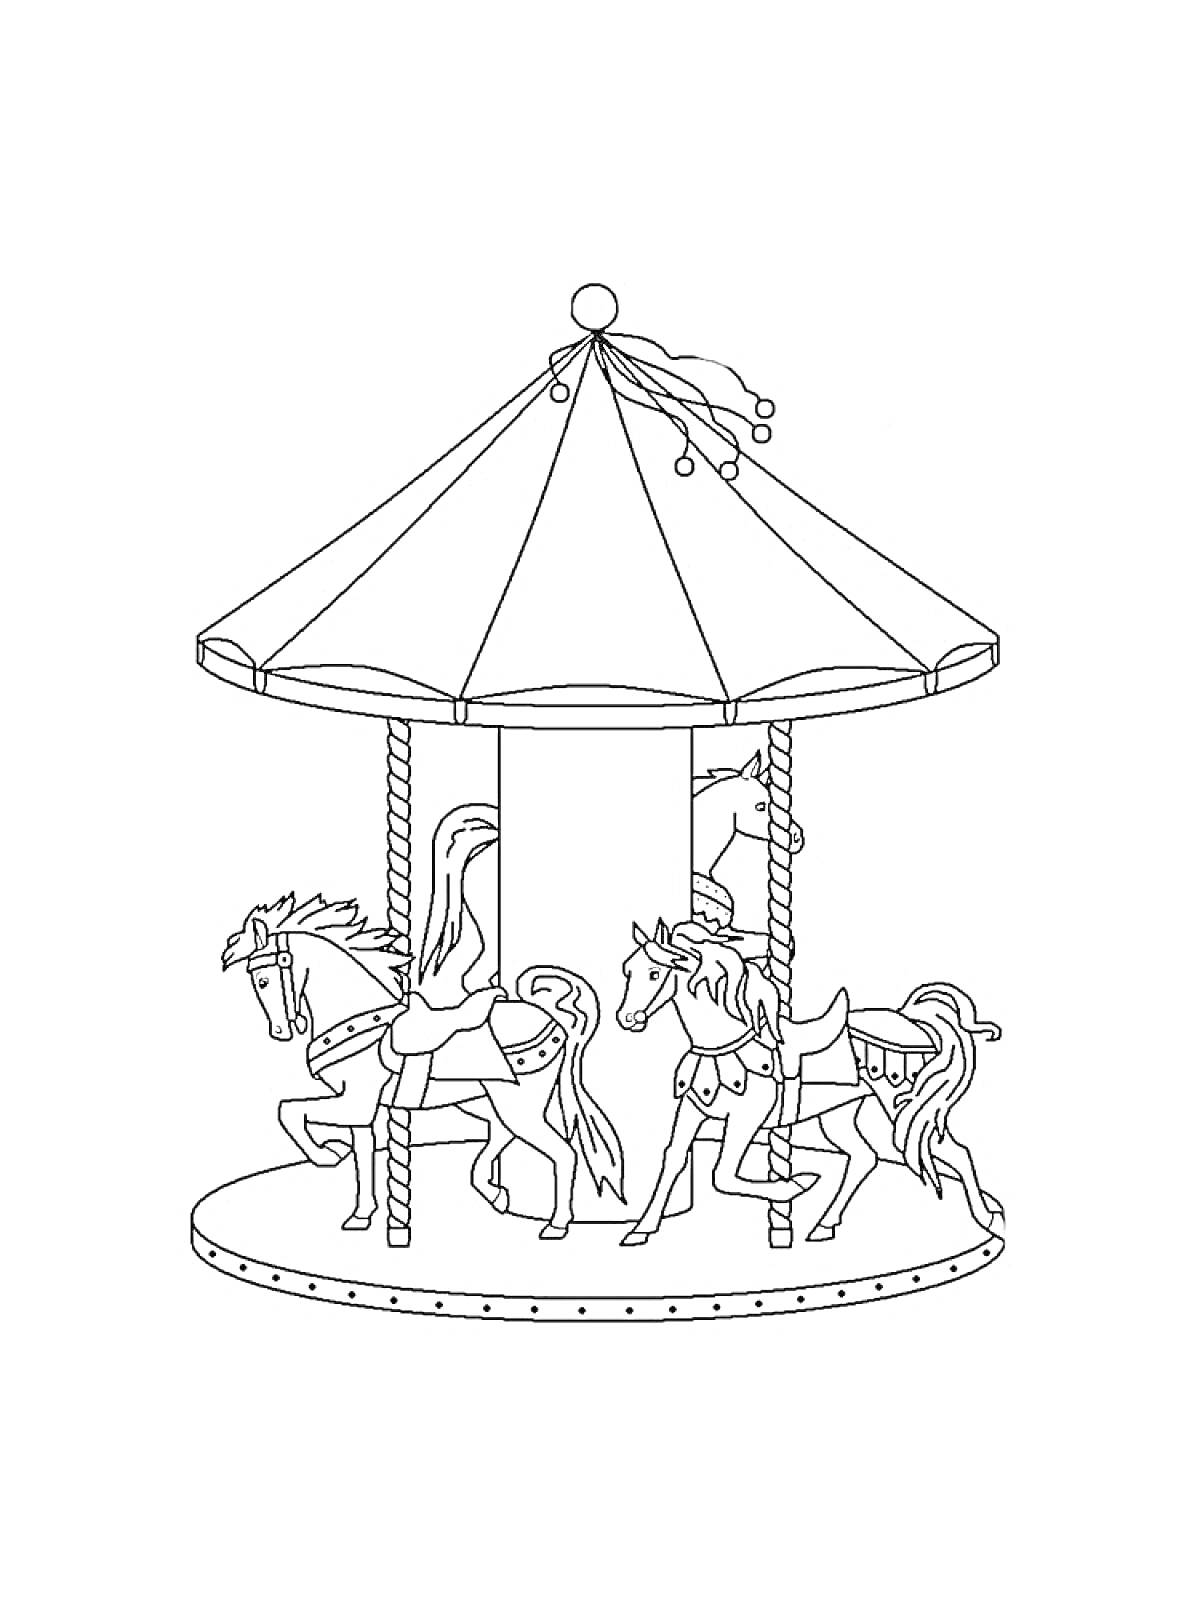 Раскраска Карусель с конями под куполом с флагом и веревочными столбами